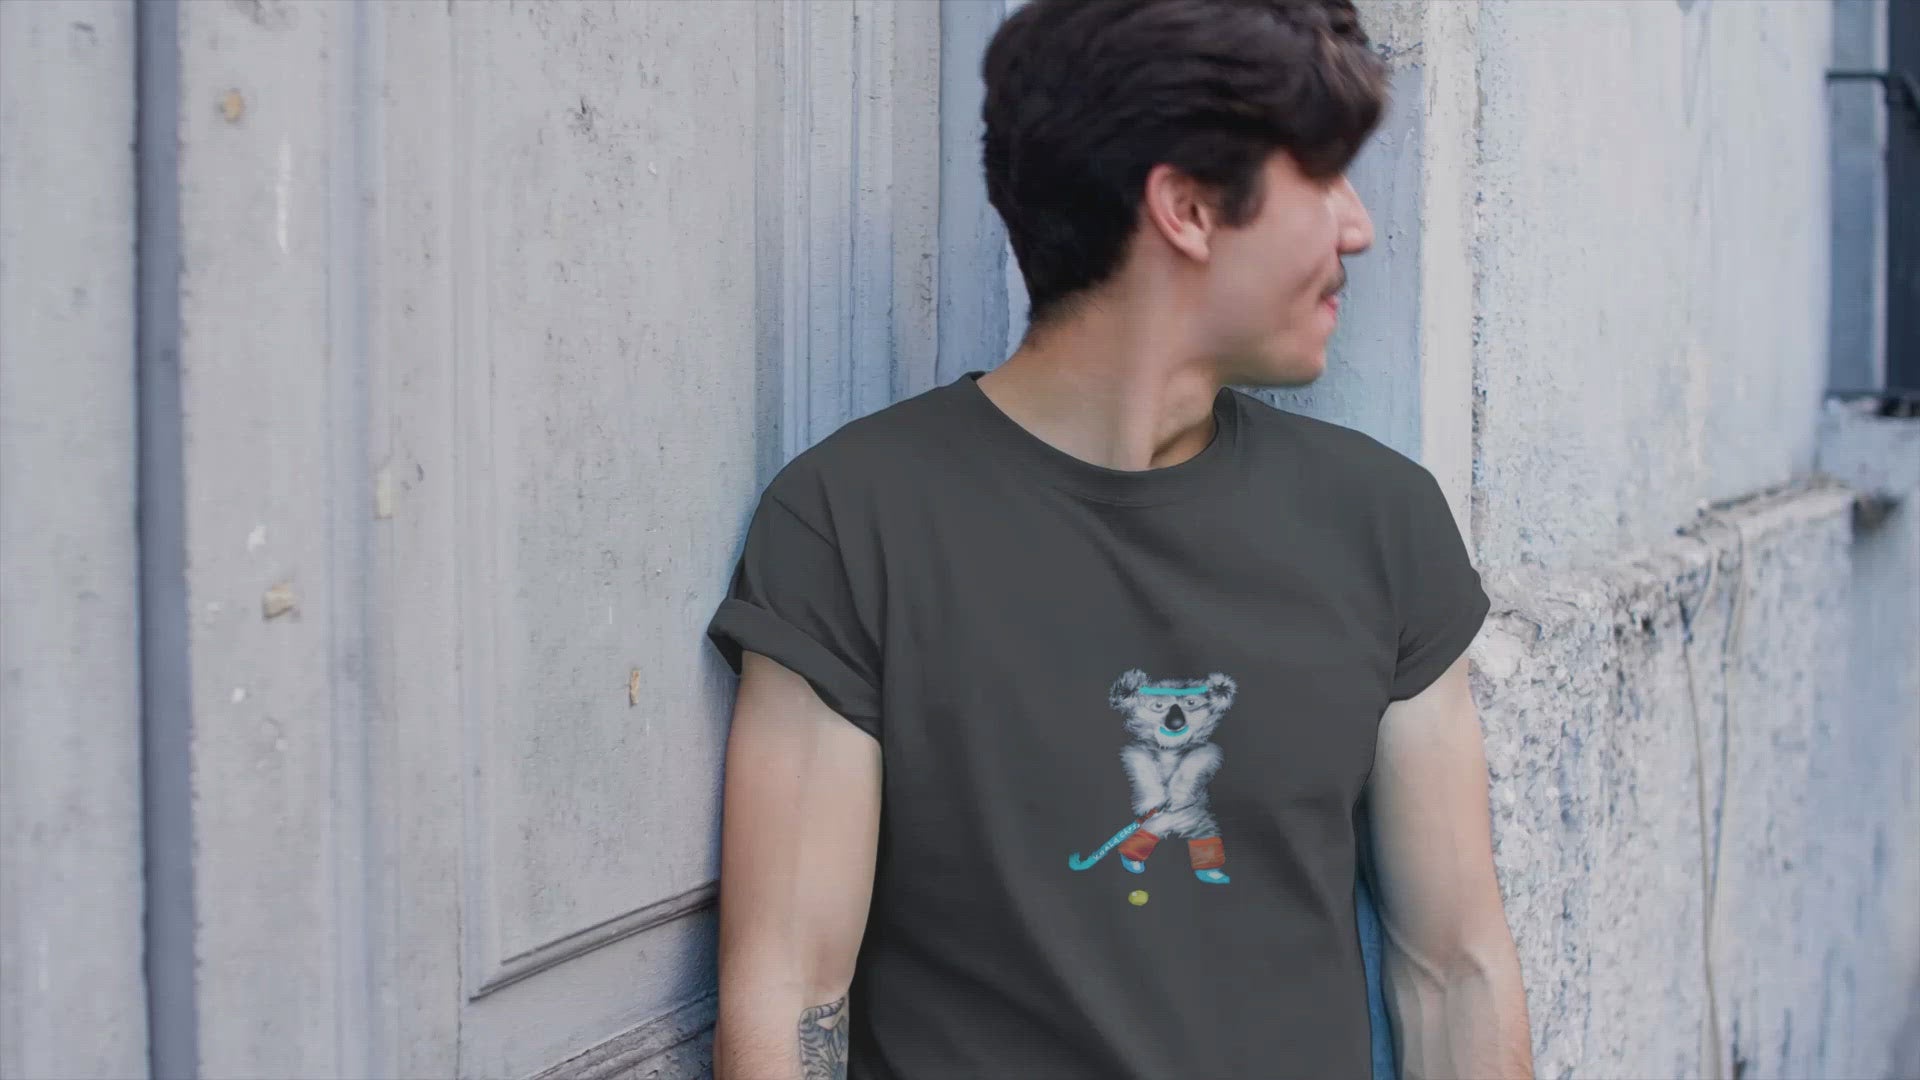 Koala Playing Hockey | 100% Organic Cotton T Shirt worn by a man outside a house